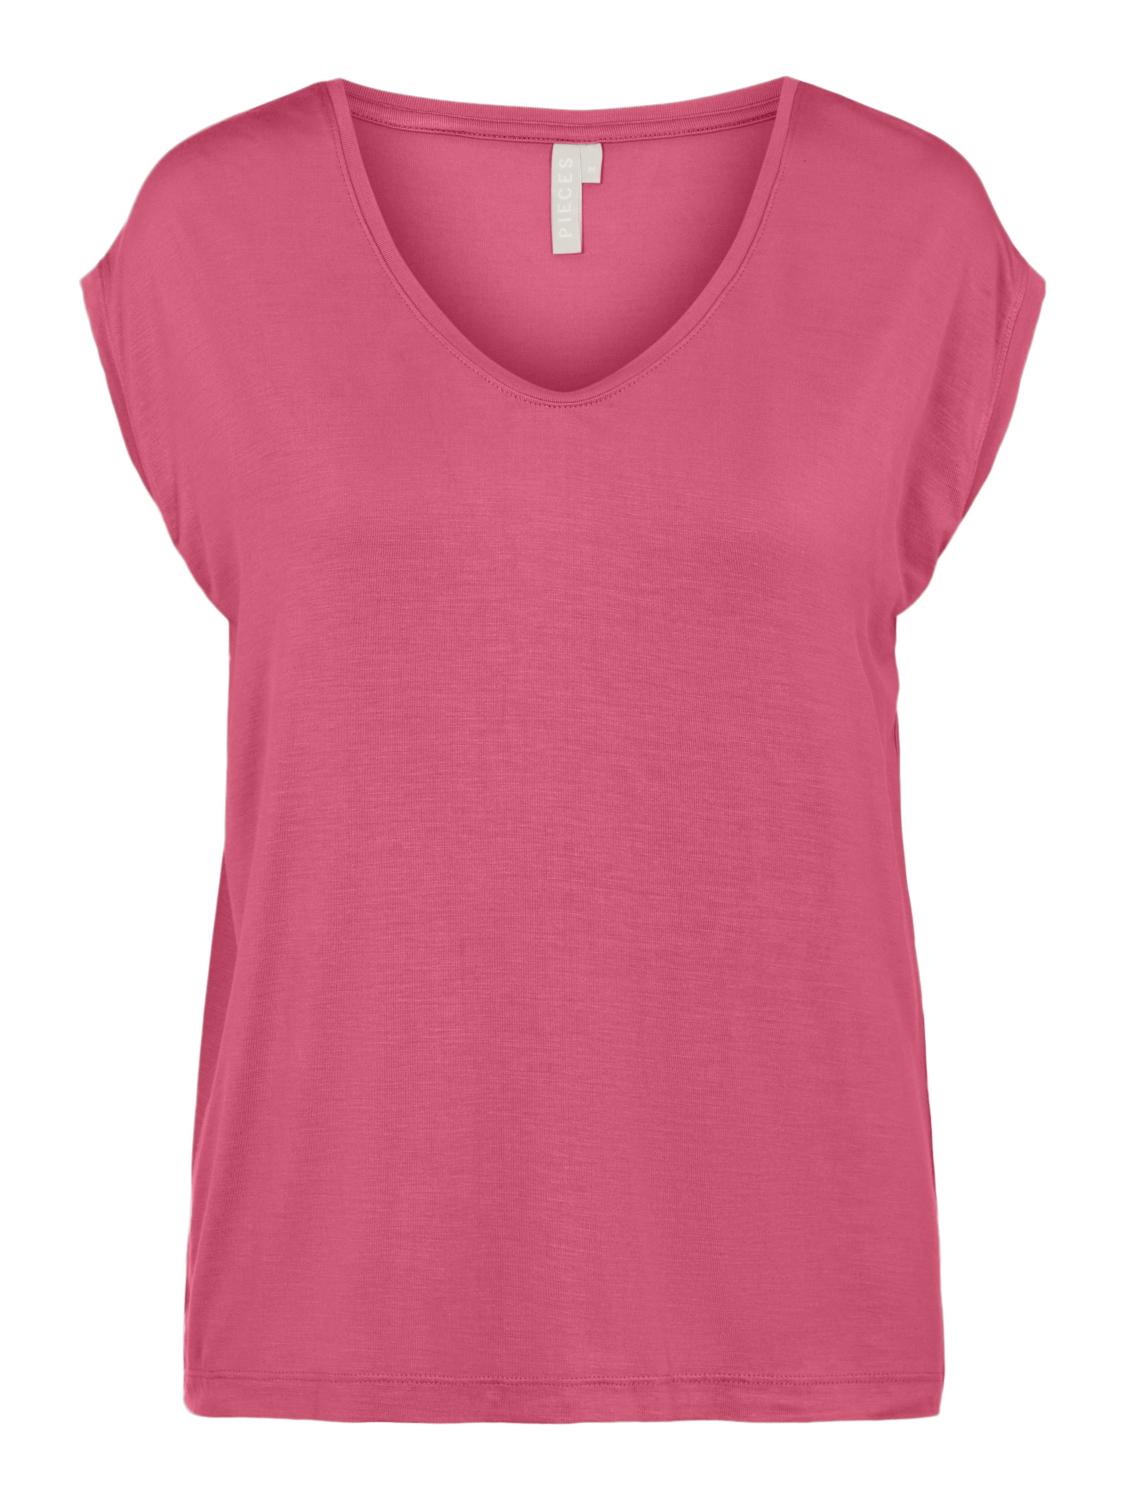 Odzież Koszulki & topy PIECES Koszulka Billo w kolorze Różowym 